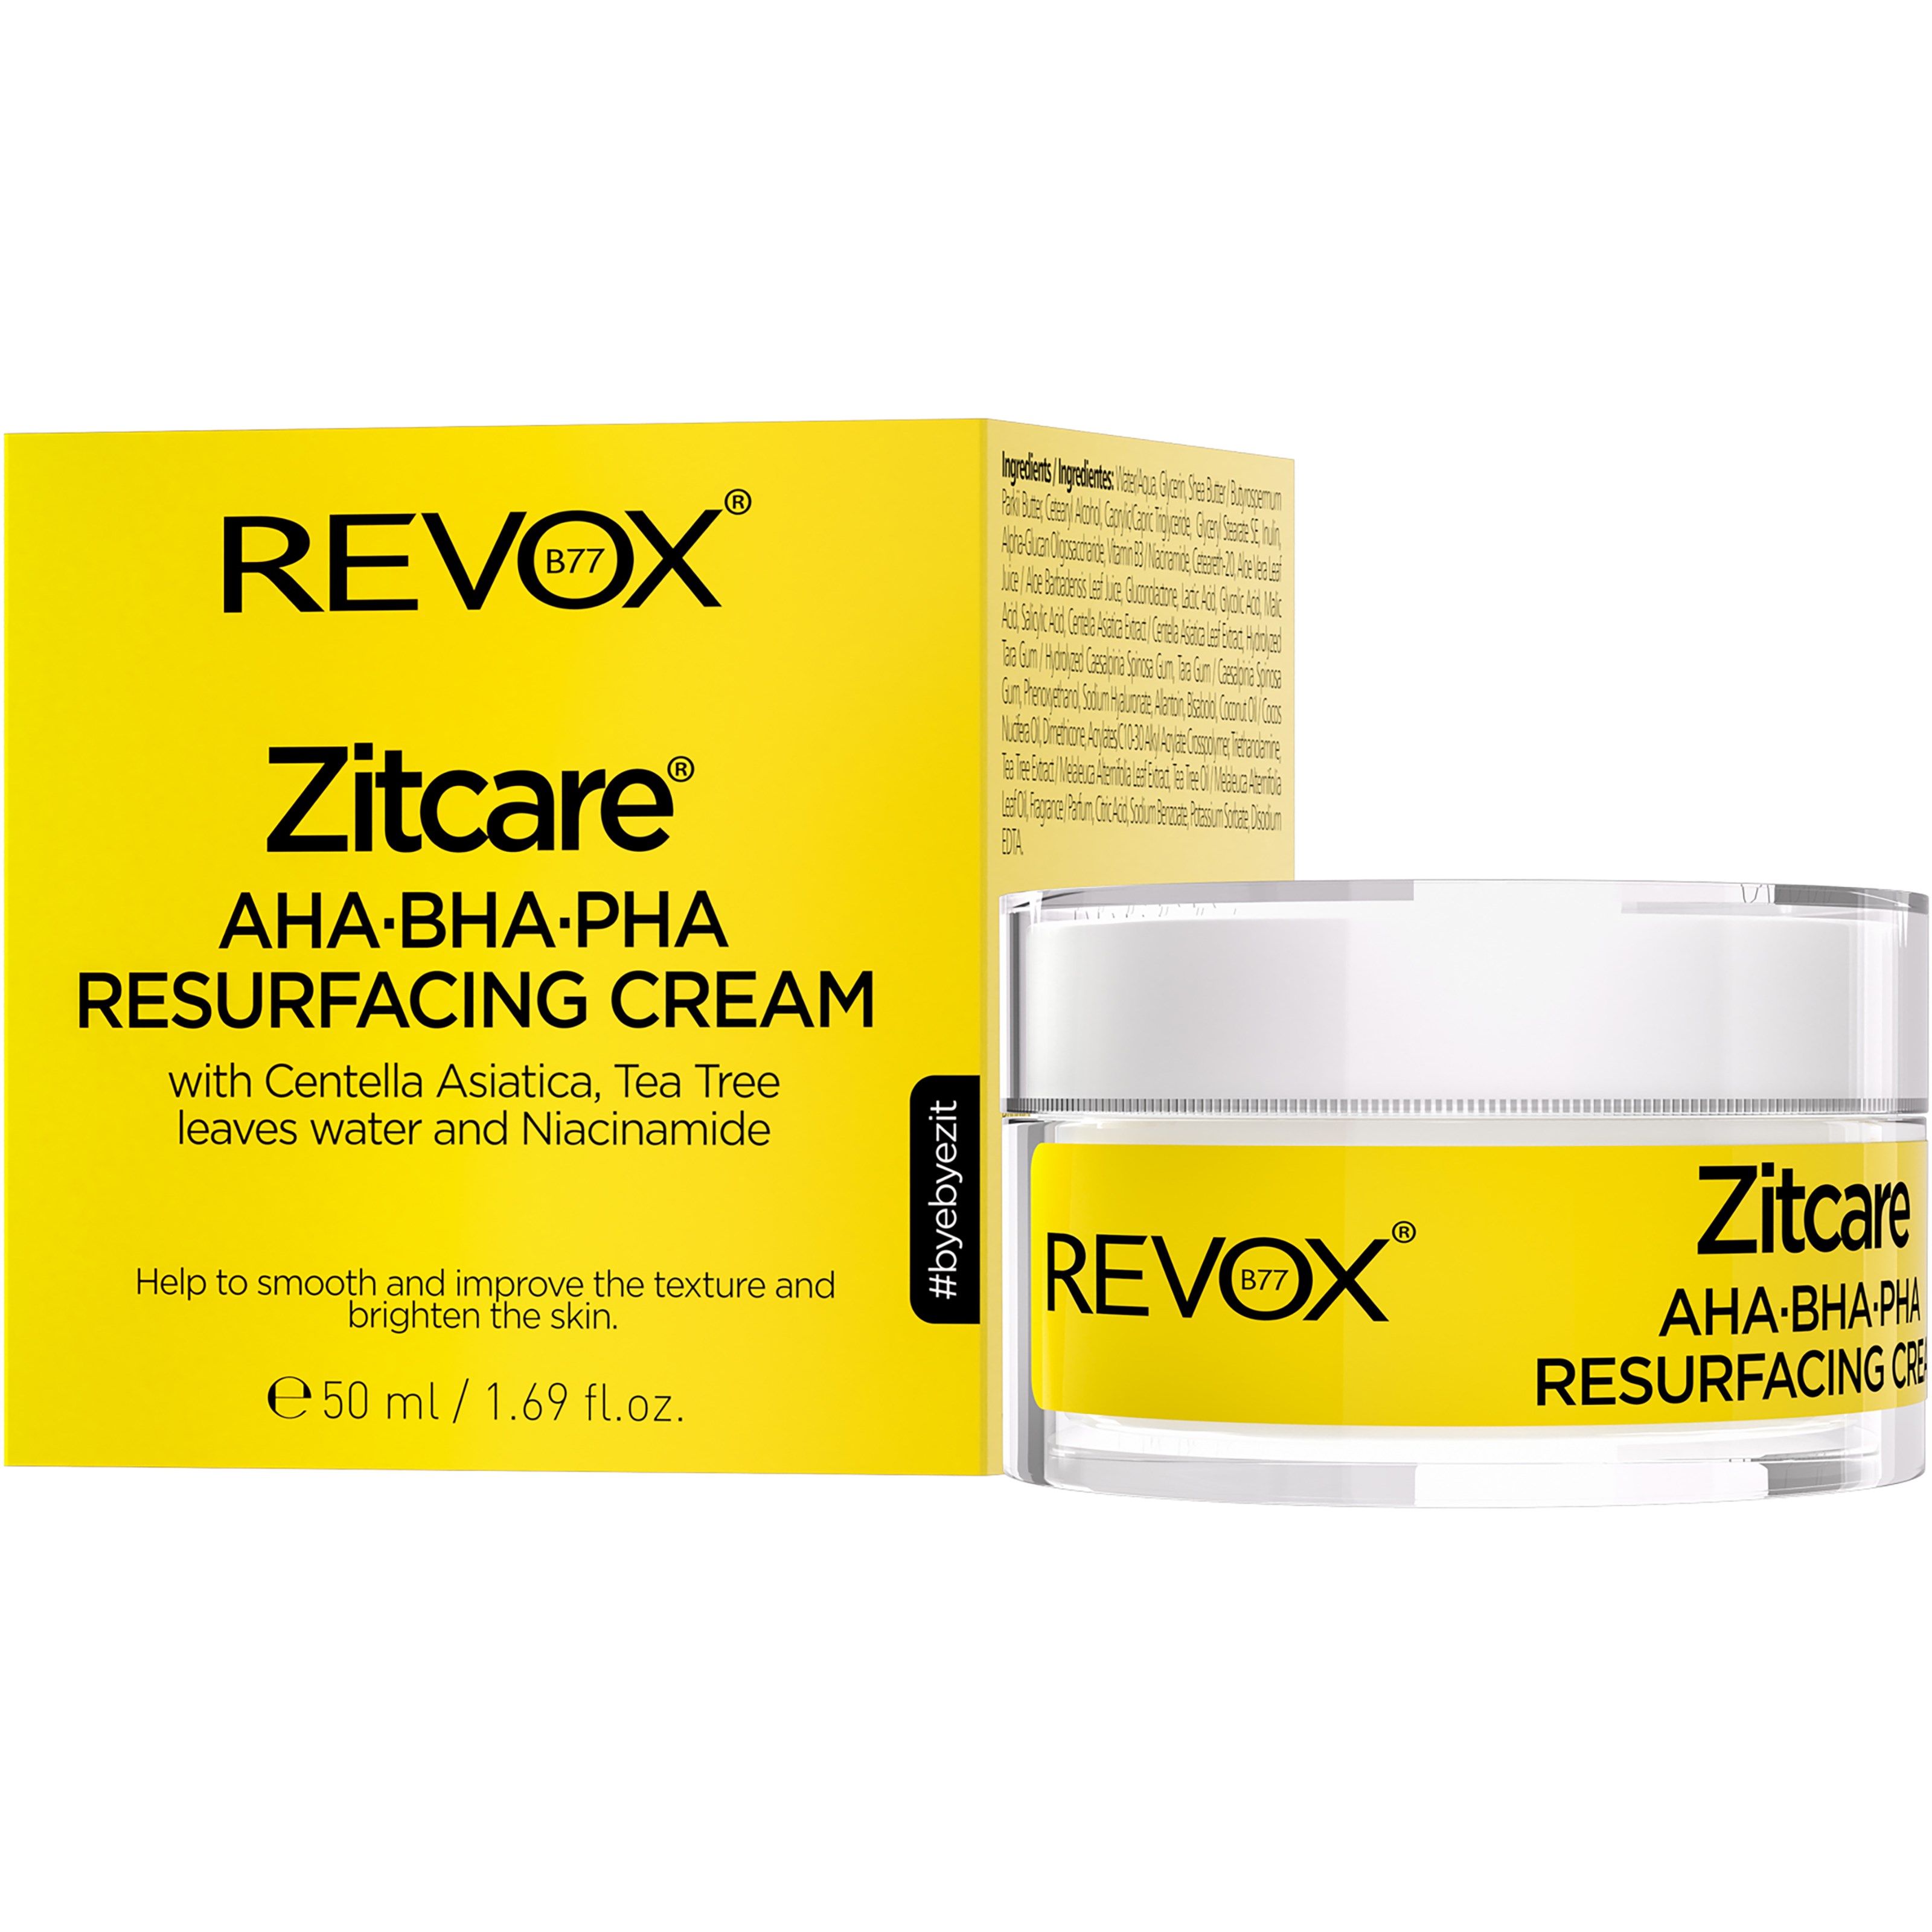 Bilde av Revox Zitcare® Aha.bha.pha. Resurfacing Cream 50 Ml